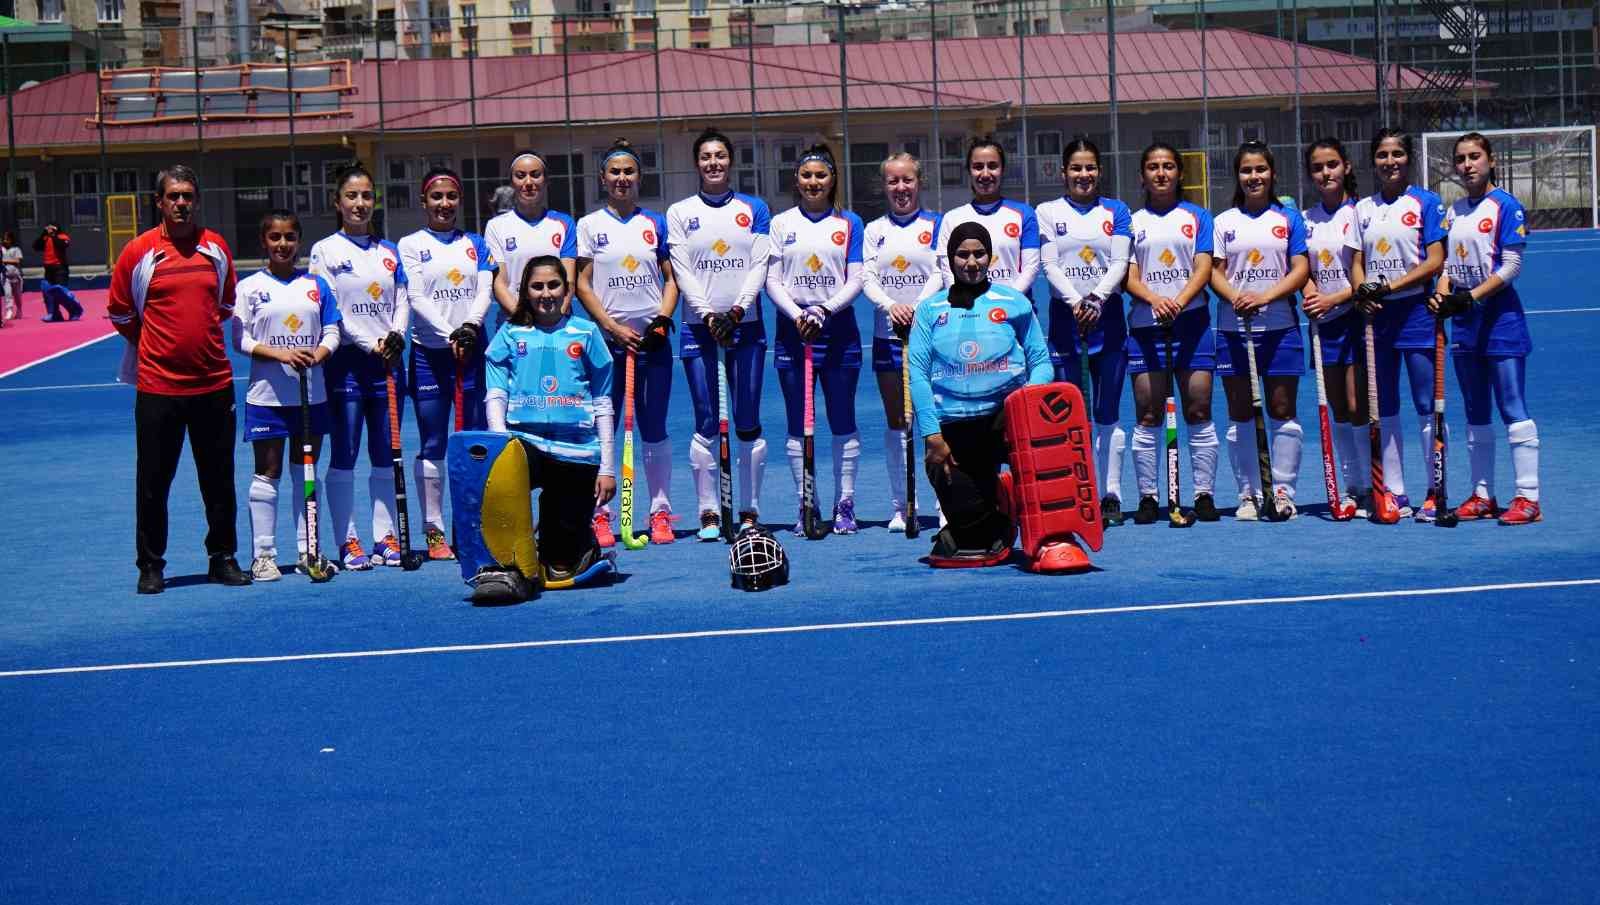 Gaziantep Polisgücü Spor Kadın Hokey Takımı, Kırıkkale Akademi Gençlik Spor Kulübü Kadın Hokey Takımı’nı 15-0’lık farklı bir skorla mağlup etti ...